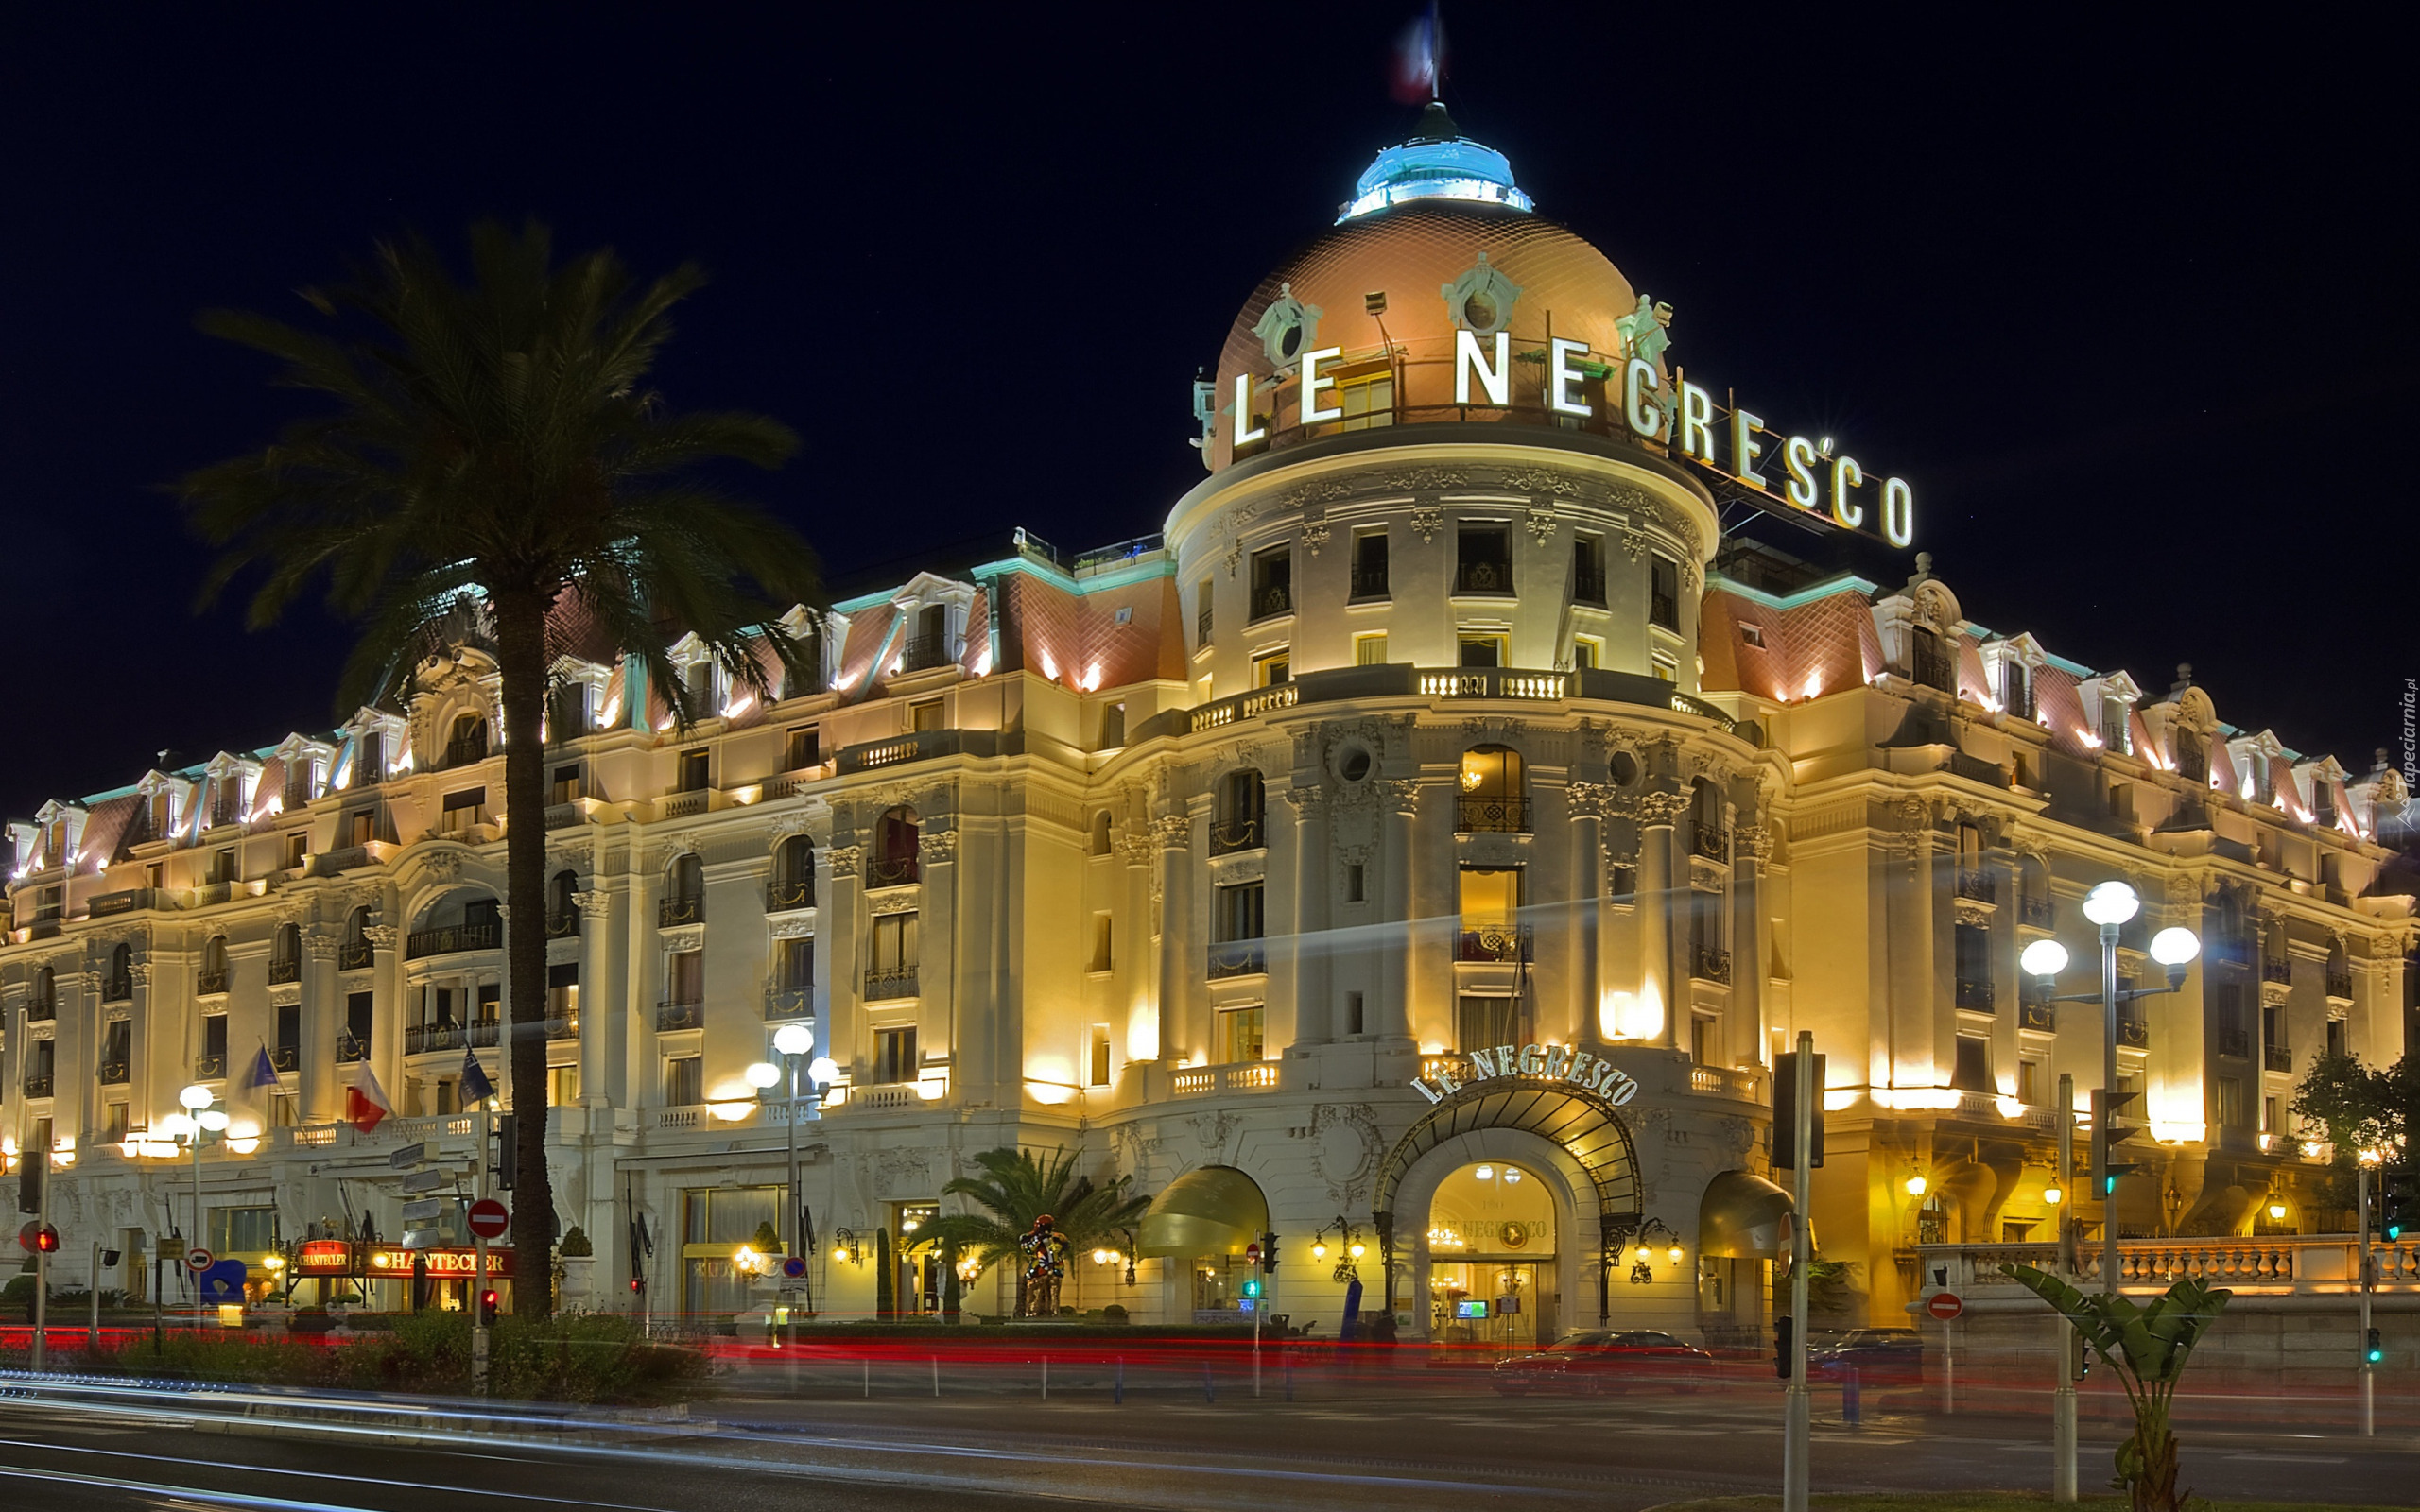 Noc, Światła, Ulica, Hotel Negresco, Nicea, Francja